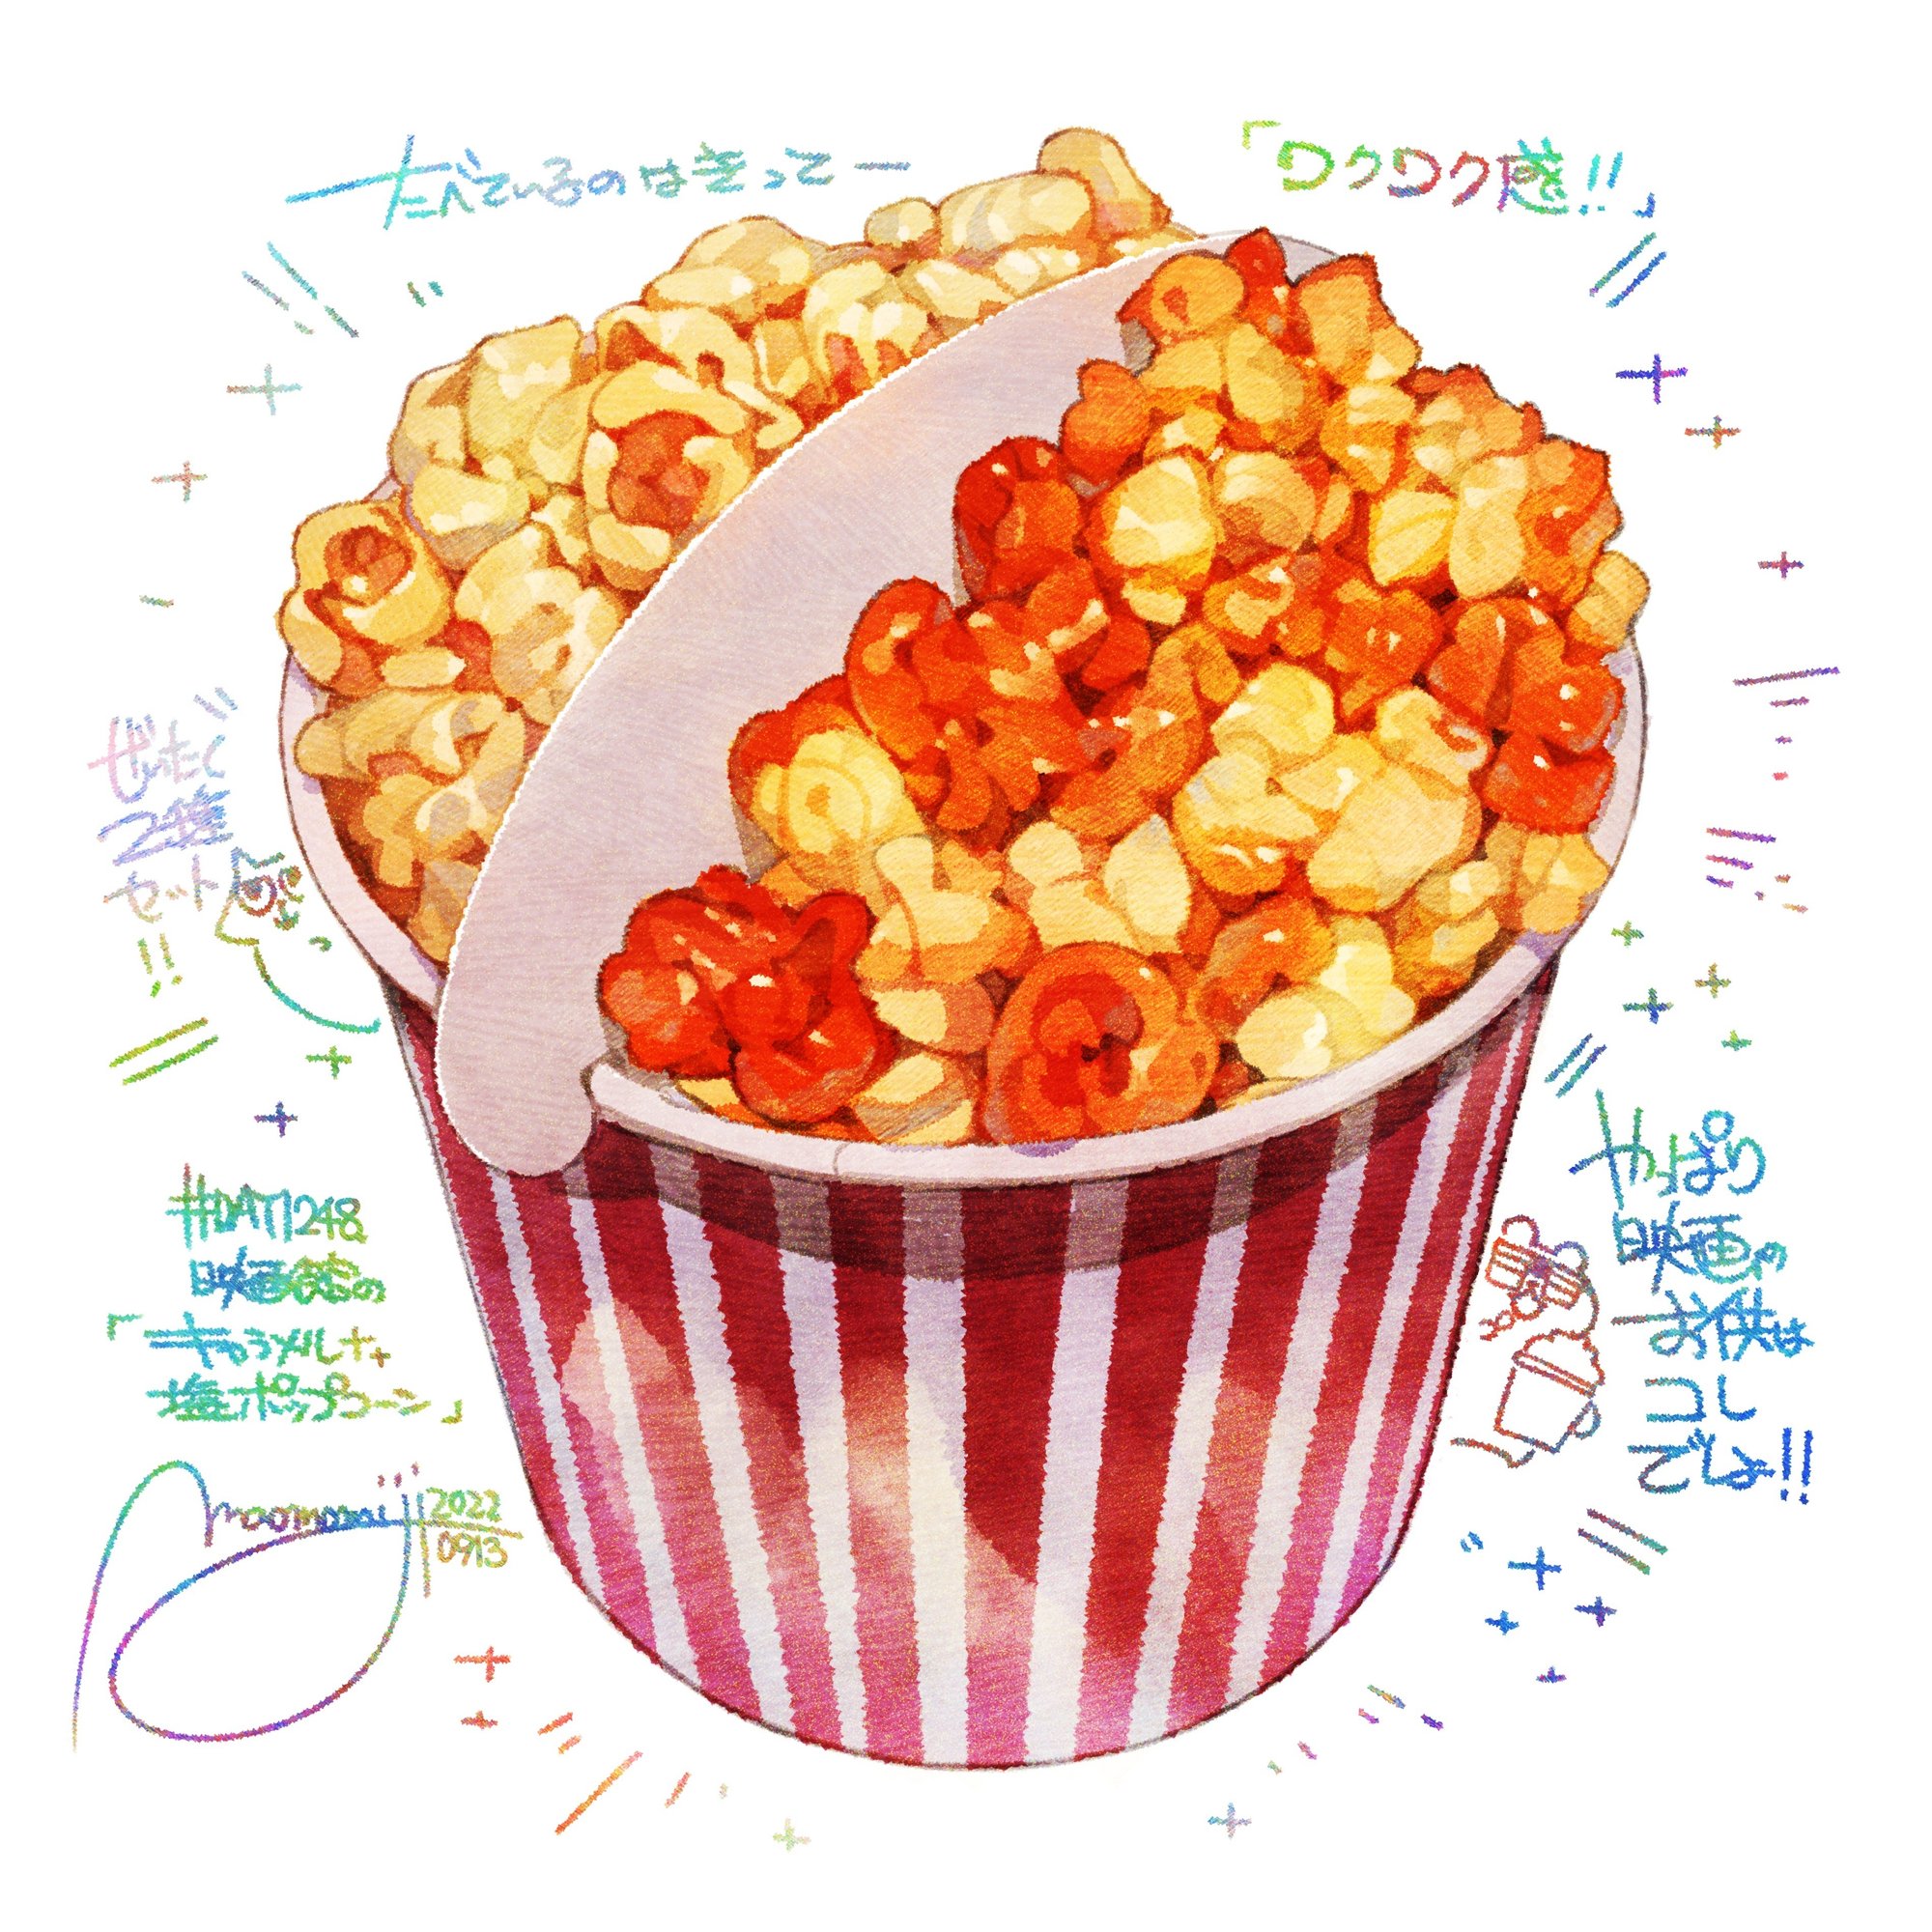 Day1248 映画館のキャラメル ポップコーン Movie Theater Caramel Popcorn もみじ真魚 Maomomiji Note